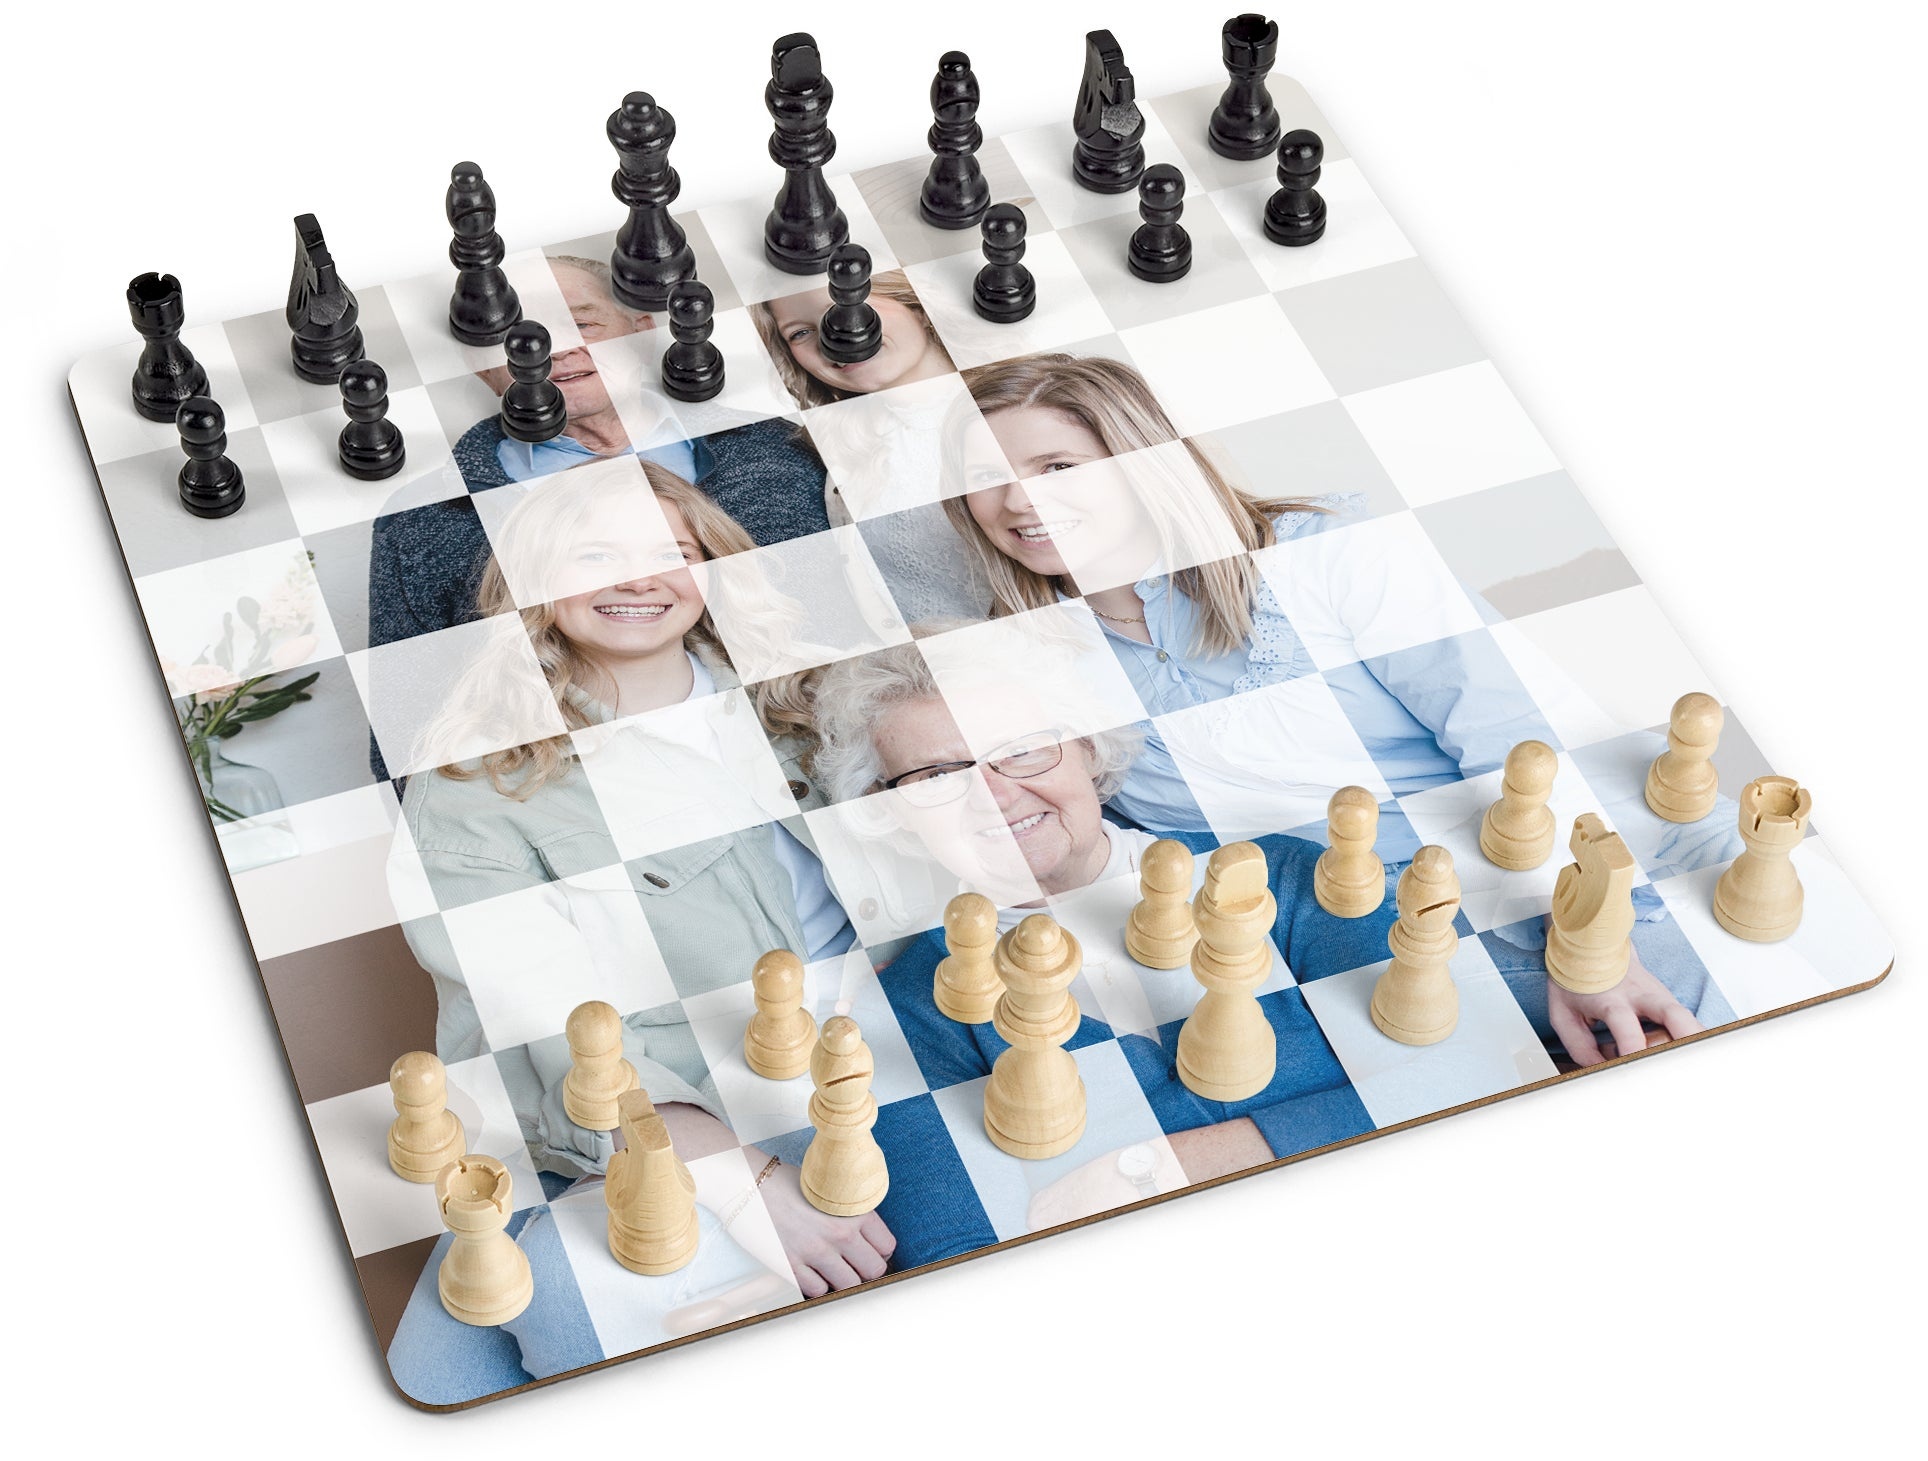 Persoalisiertes Brettspiel - Schach